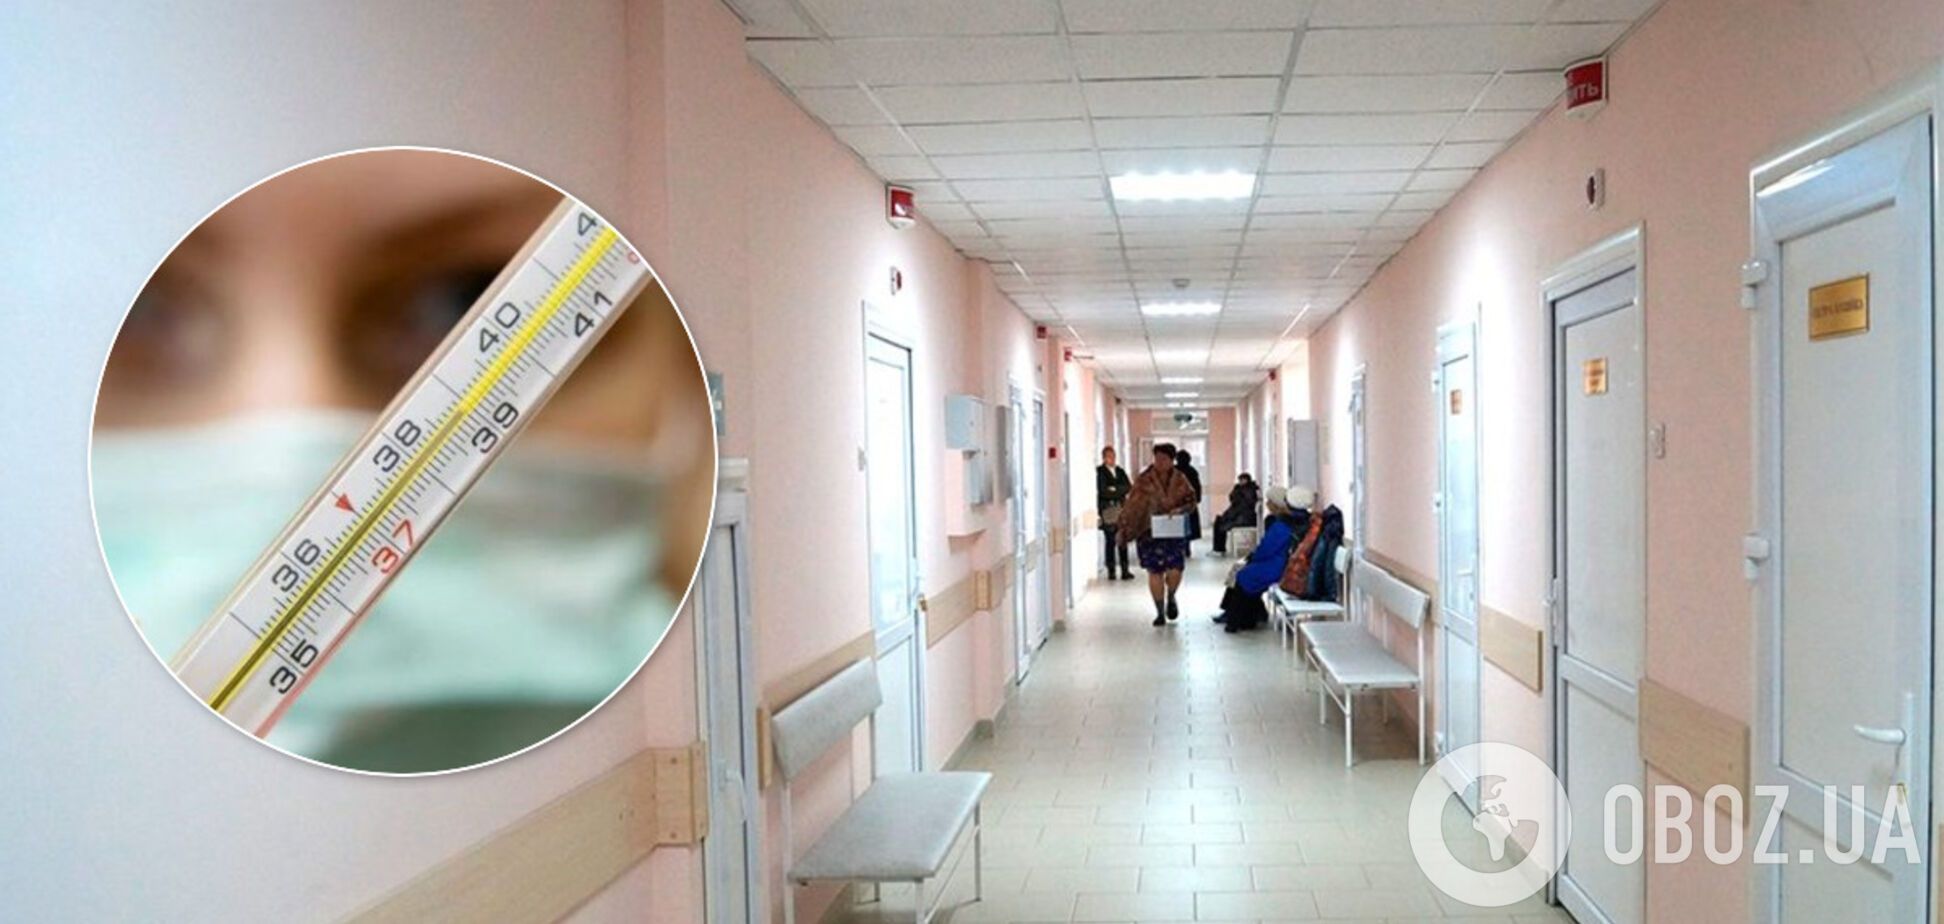 В Сумах отказались принимать пациента с температурой: женщина умерла